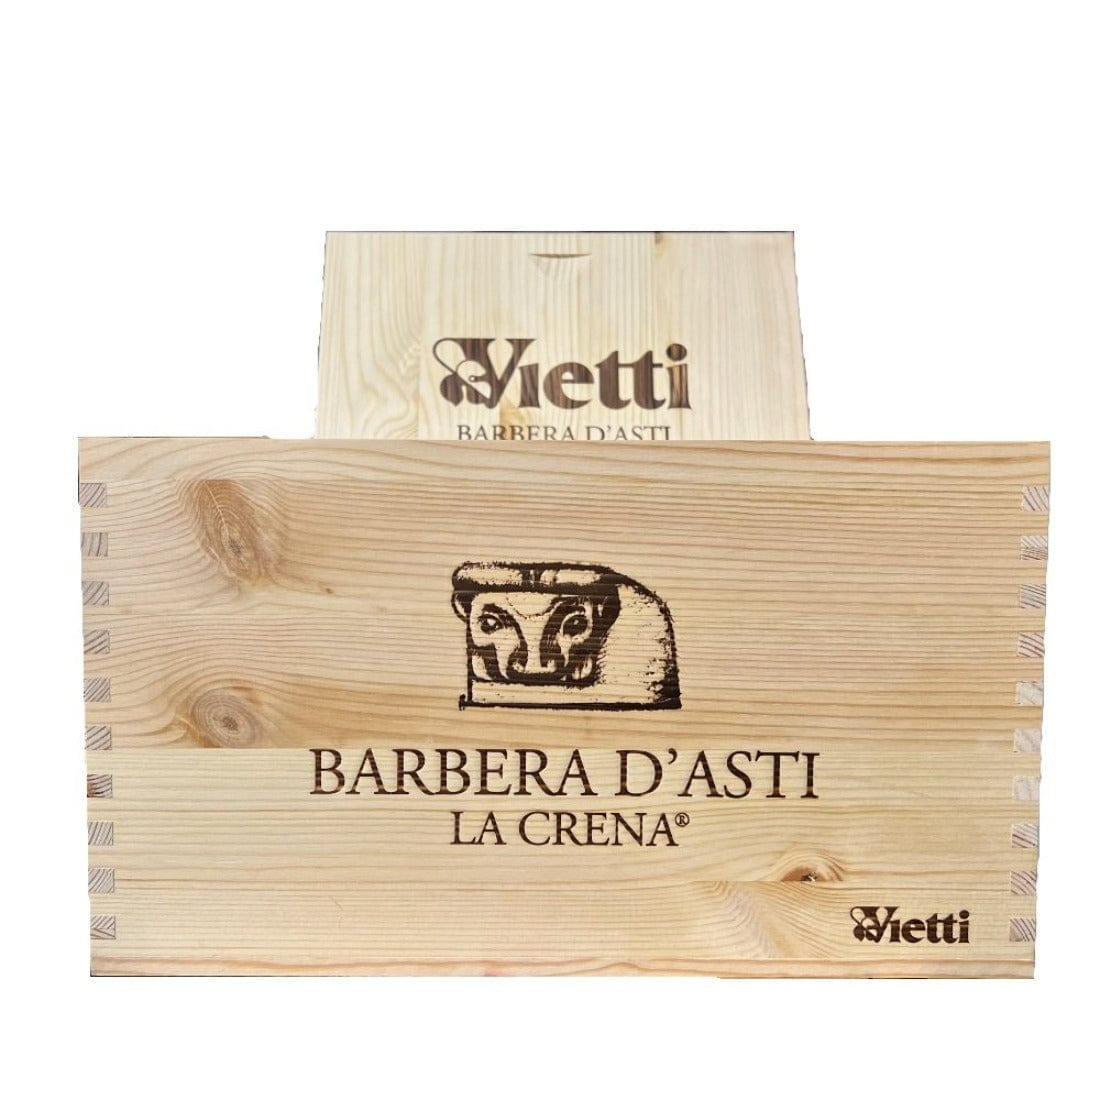 Vietti Barbera d'Asti 2021 Docg La Crena Bio 6 bottiglie - Vietti